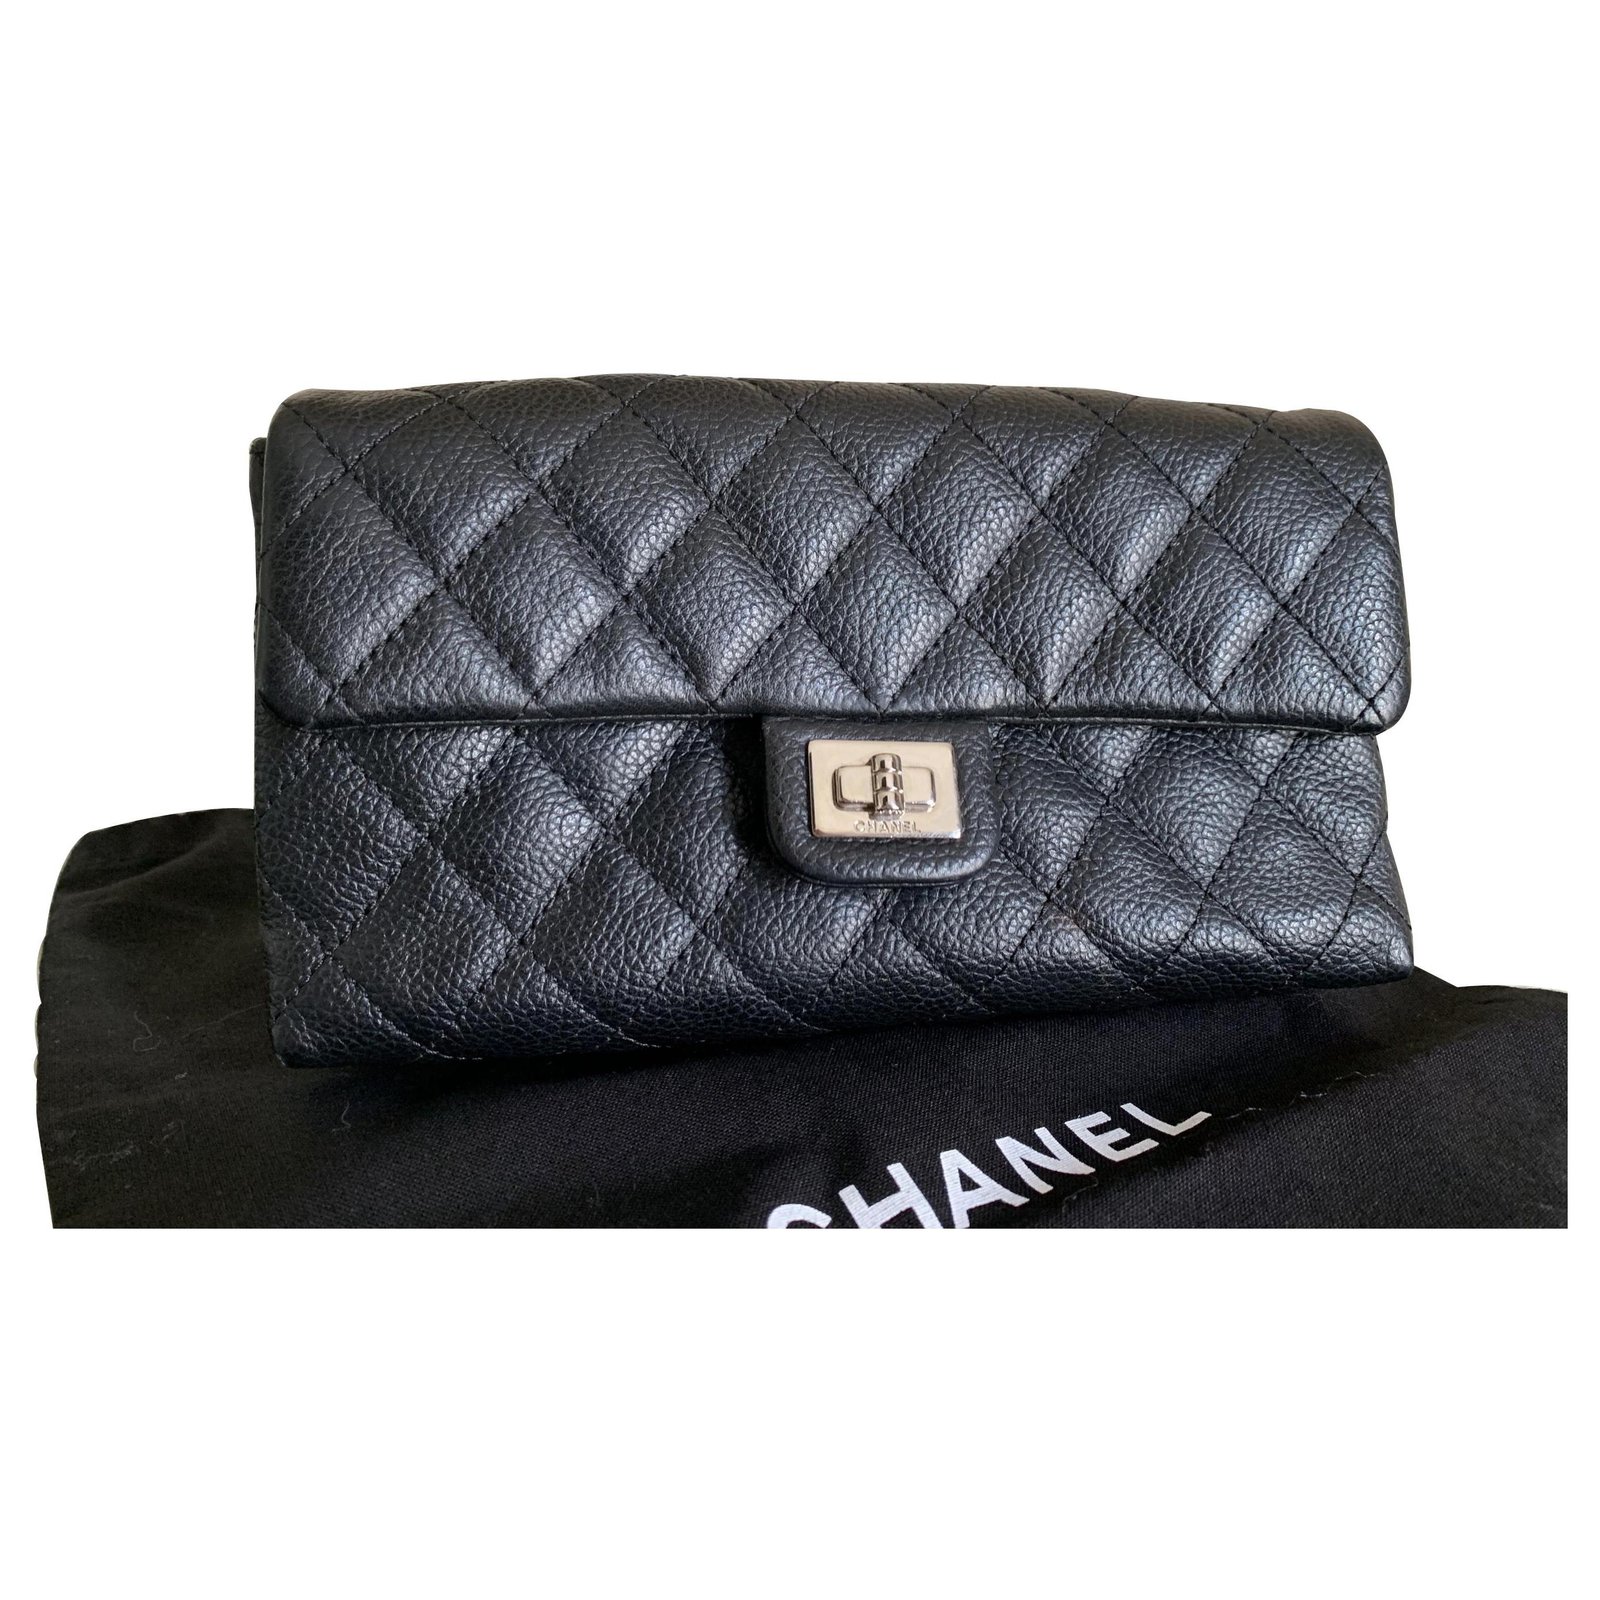 Chanel Uniform Leather Belt Bag mini 2.55 leather Belt Bag, Bumbag